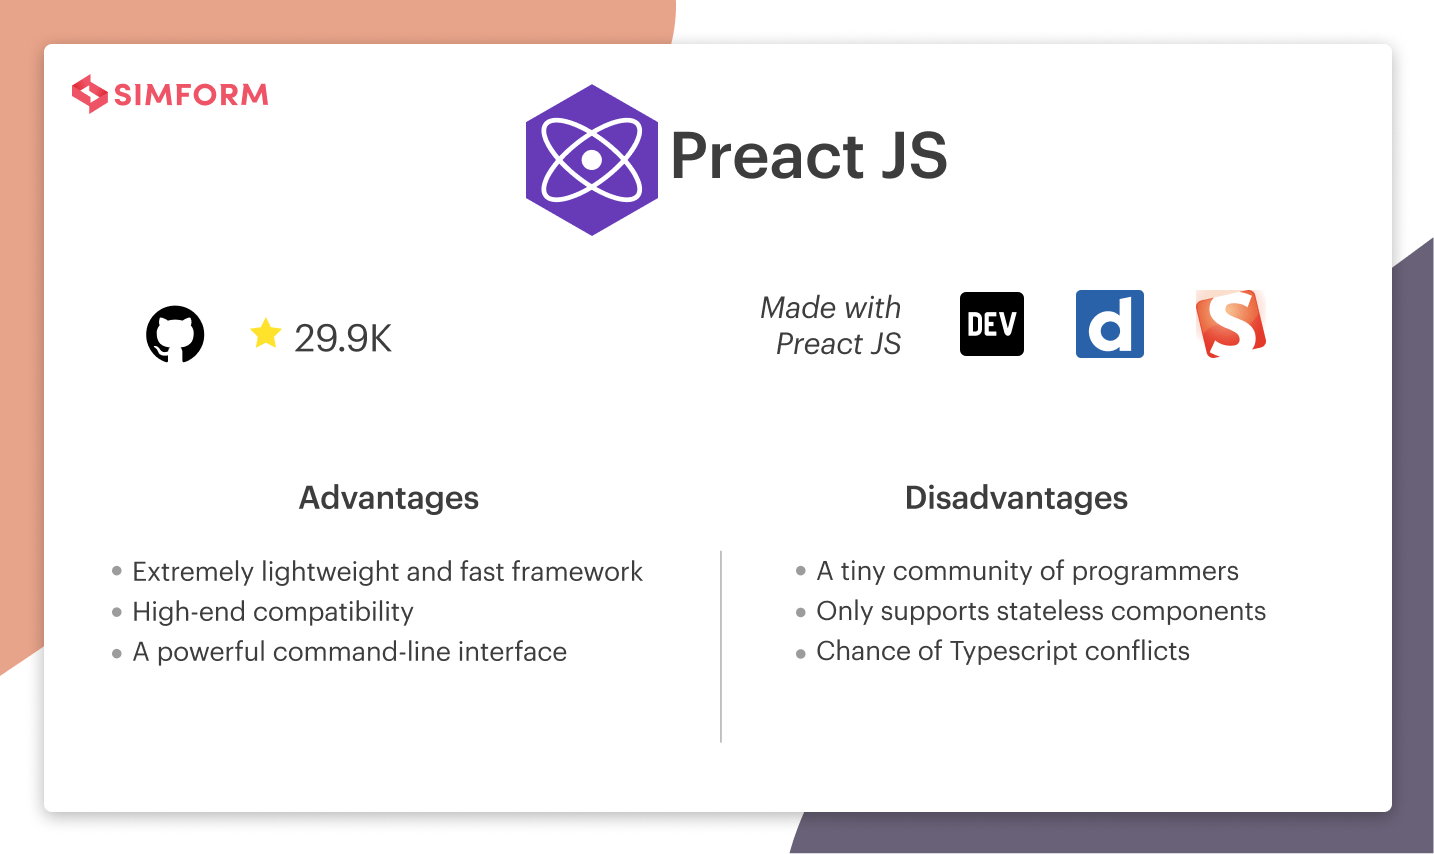 Preact JS